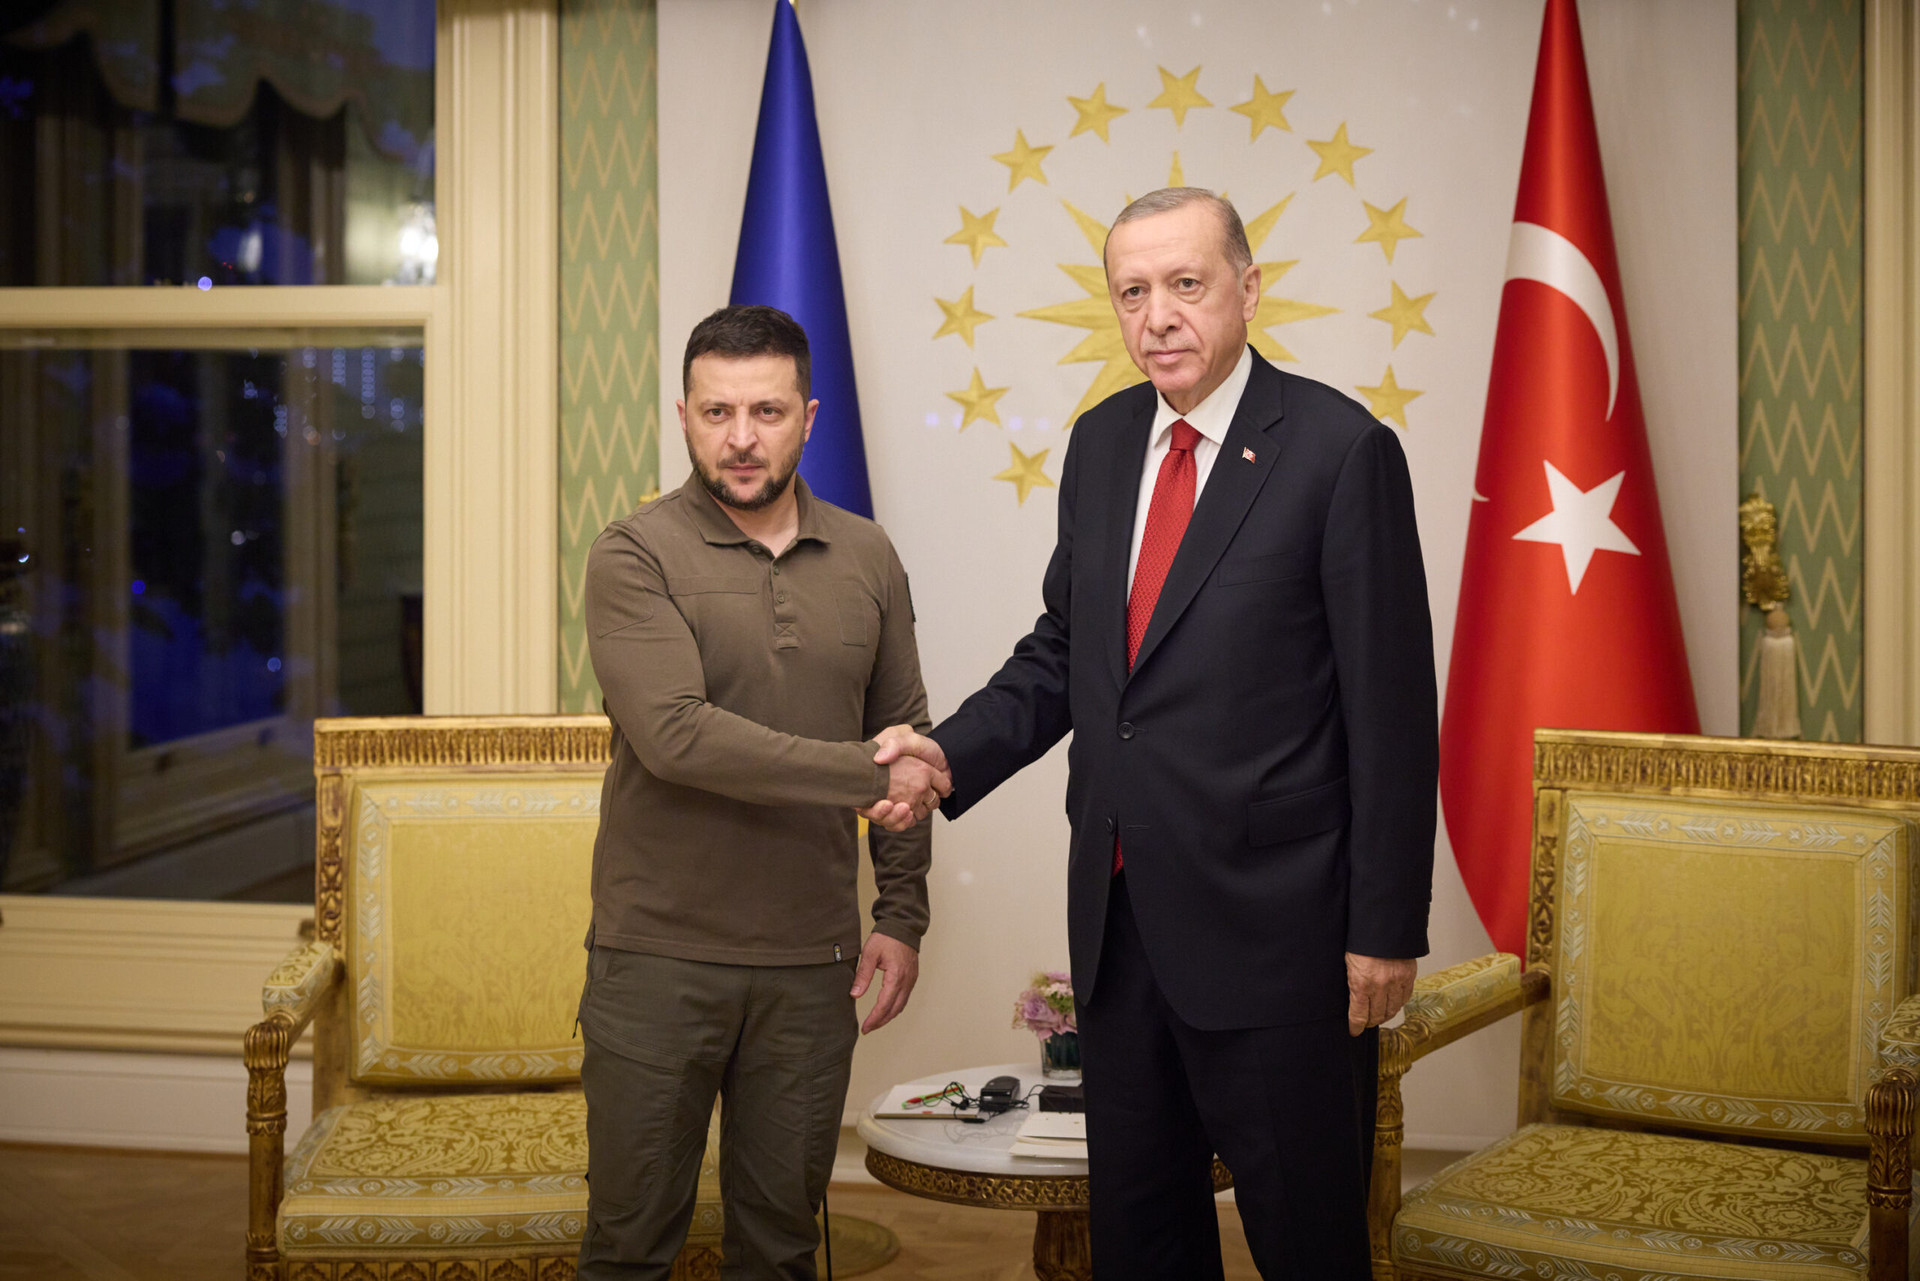 Tổng thống Ukraine Zelensky (trái) họp báo với người đồng cấp Thổ Nhĩ Kỳ Erdogan tại Istanbul ngày 8/7. (Ảnh: Agenzia Nova)